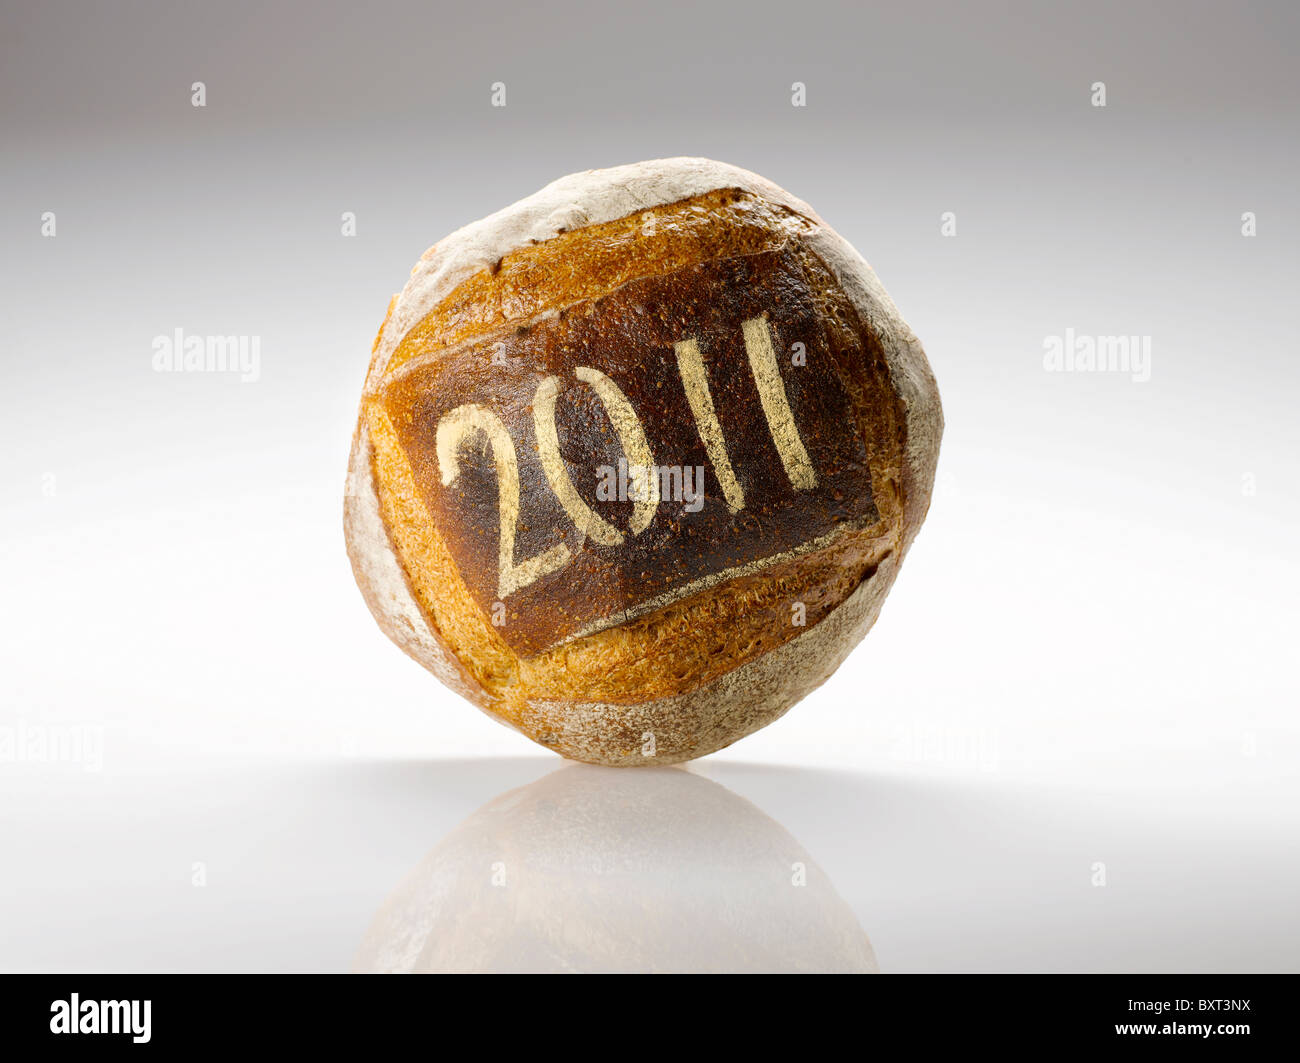 Miche de pain rond saupoudrés de l'année 2011 Banque D'Images